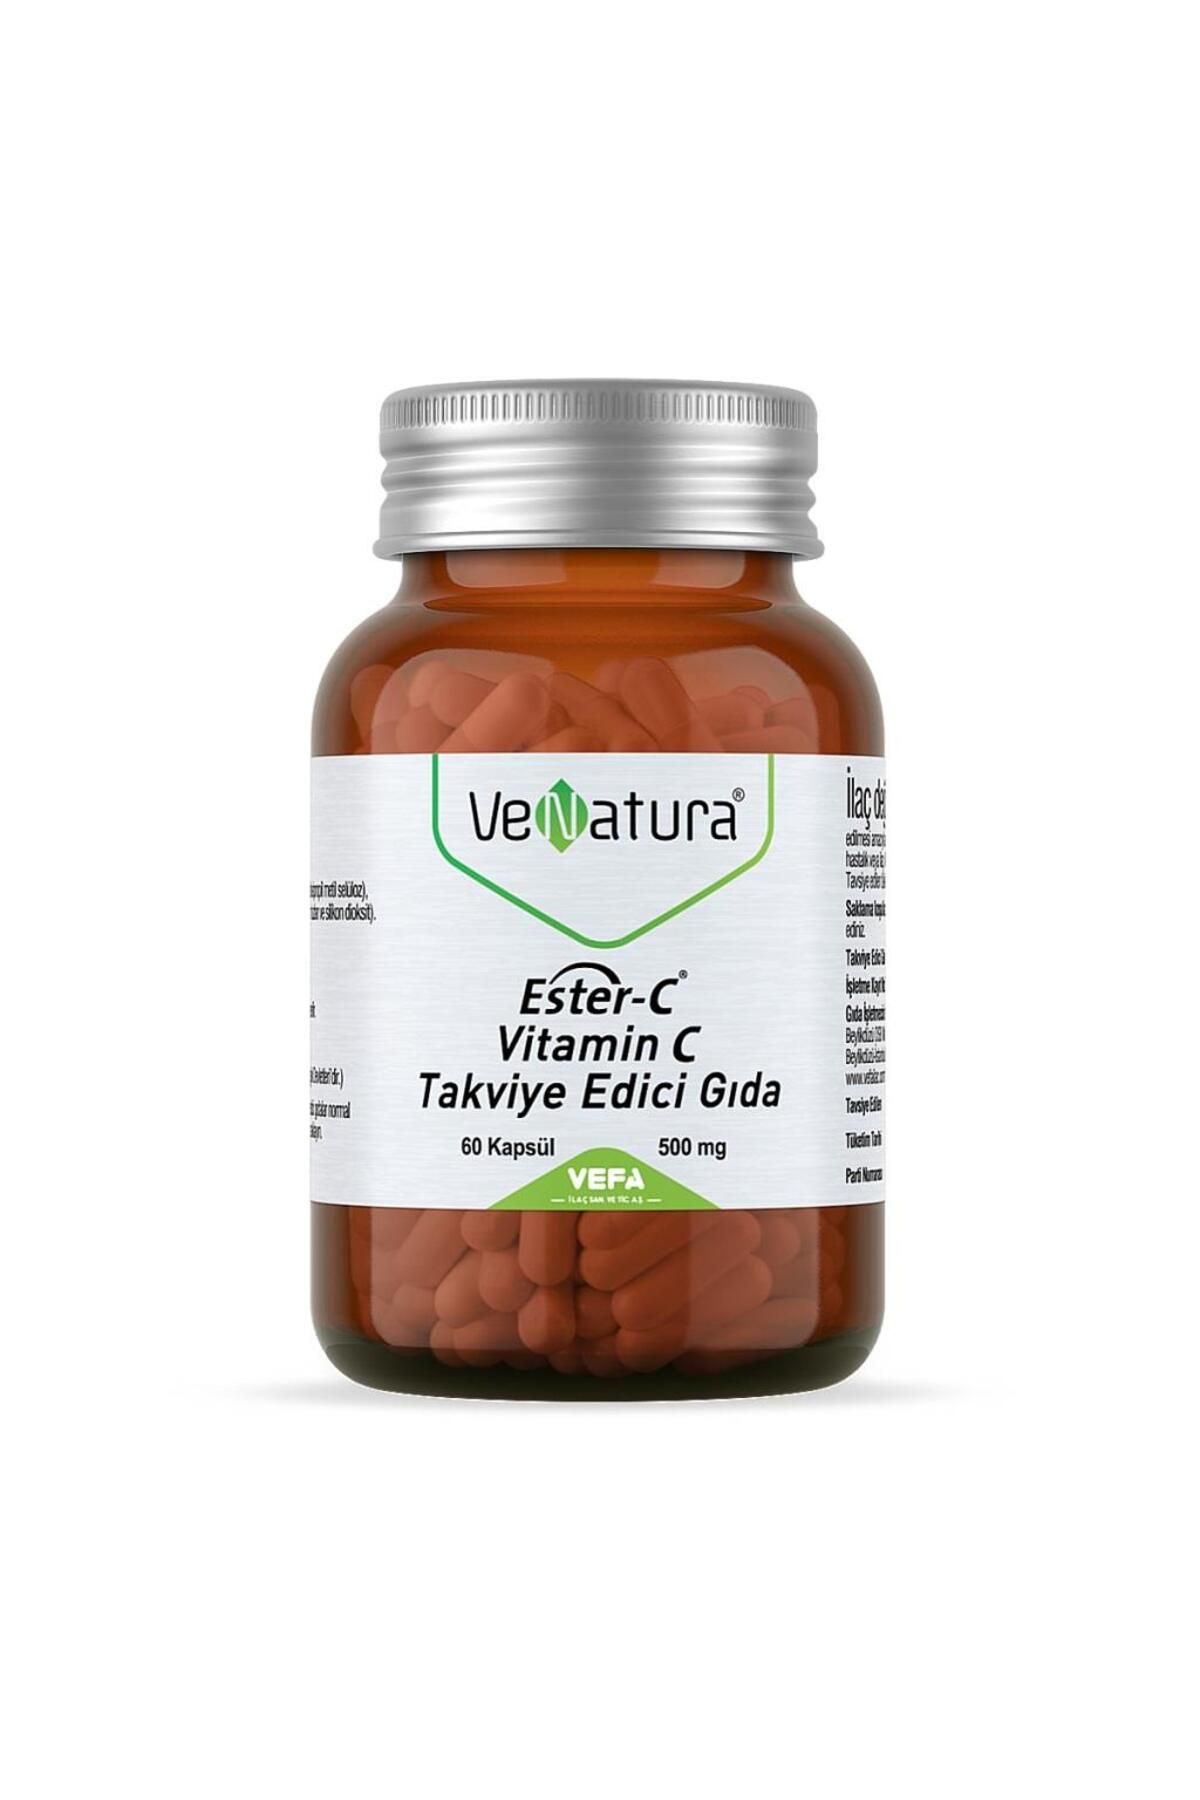 Venatura Ester C Vitamin C 500 Mg Takviye Edici Gıda 60 Kapsül